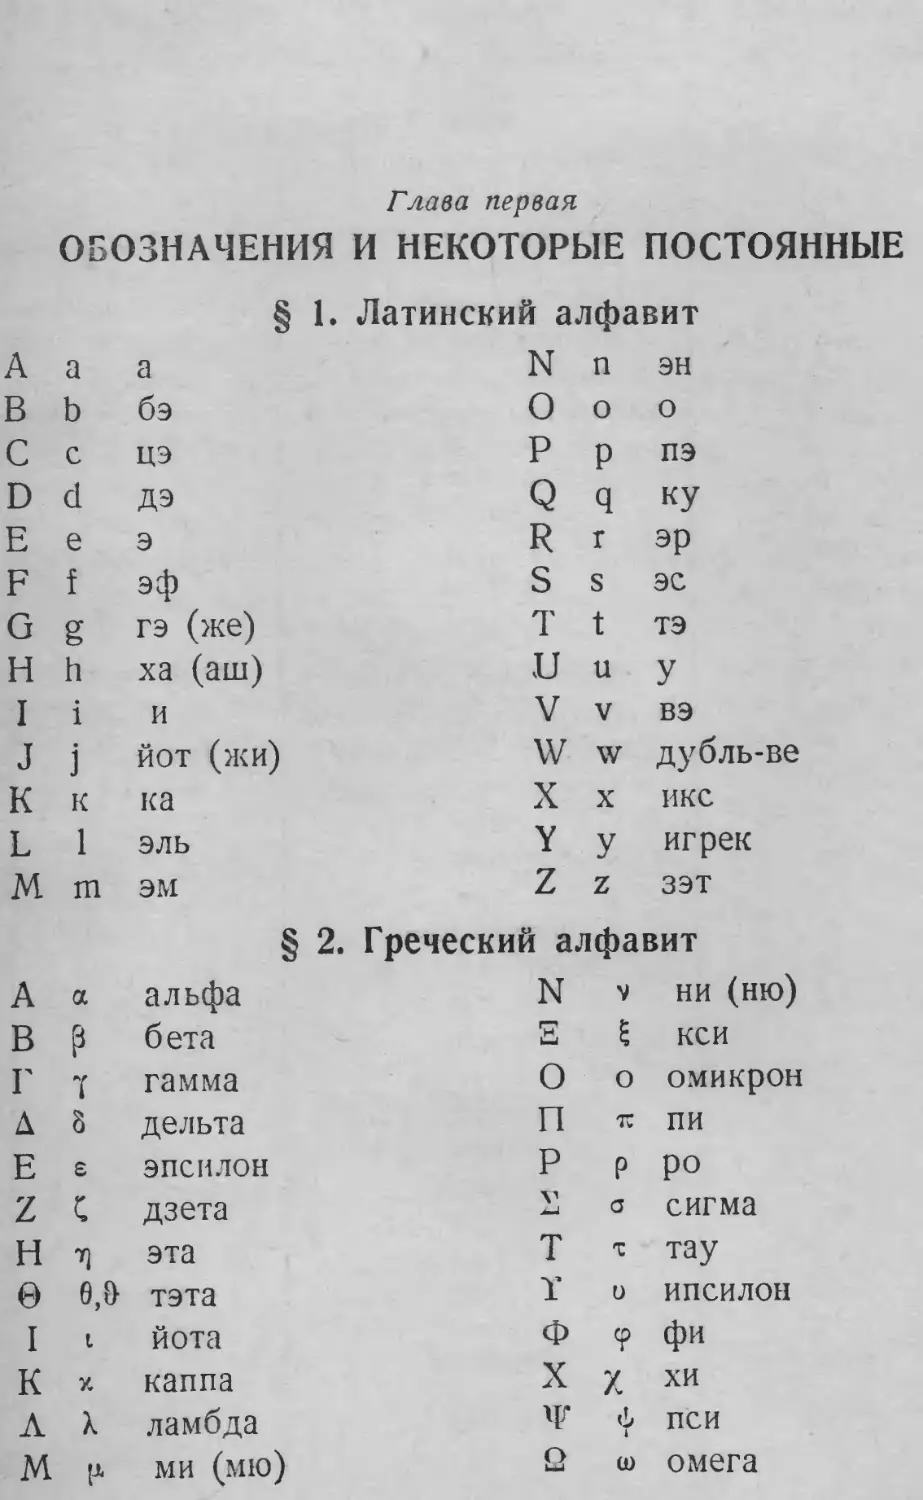 Алфавиты греческий и латинский
§ 2. Греческий алфавит